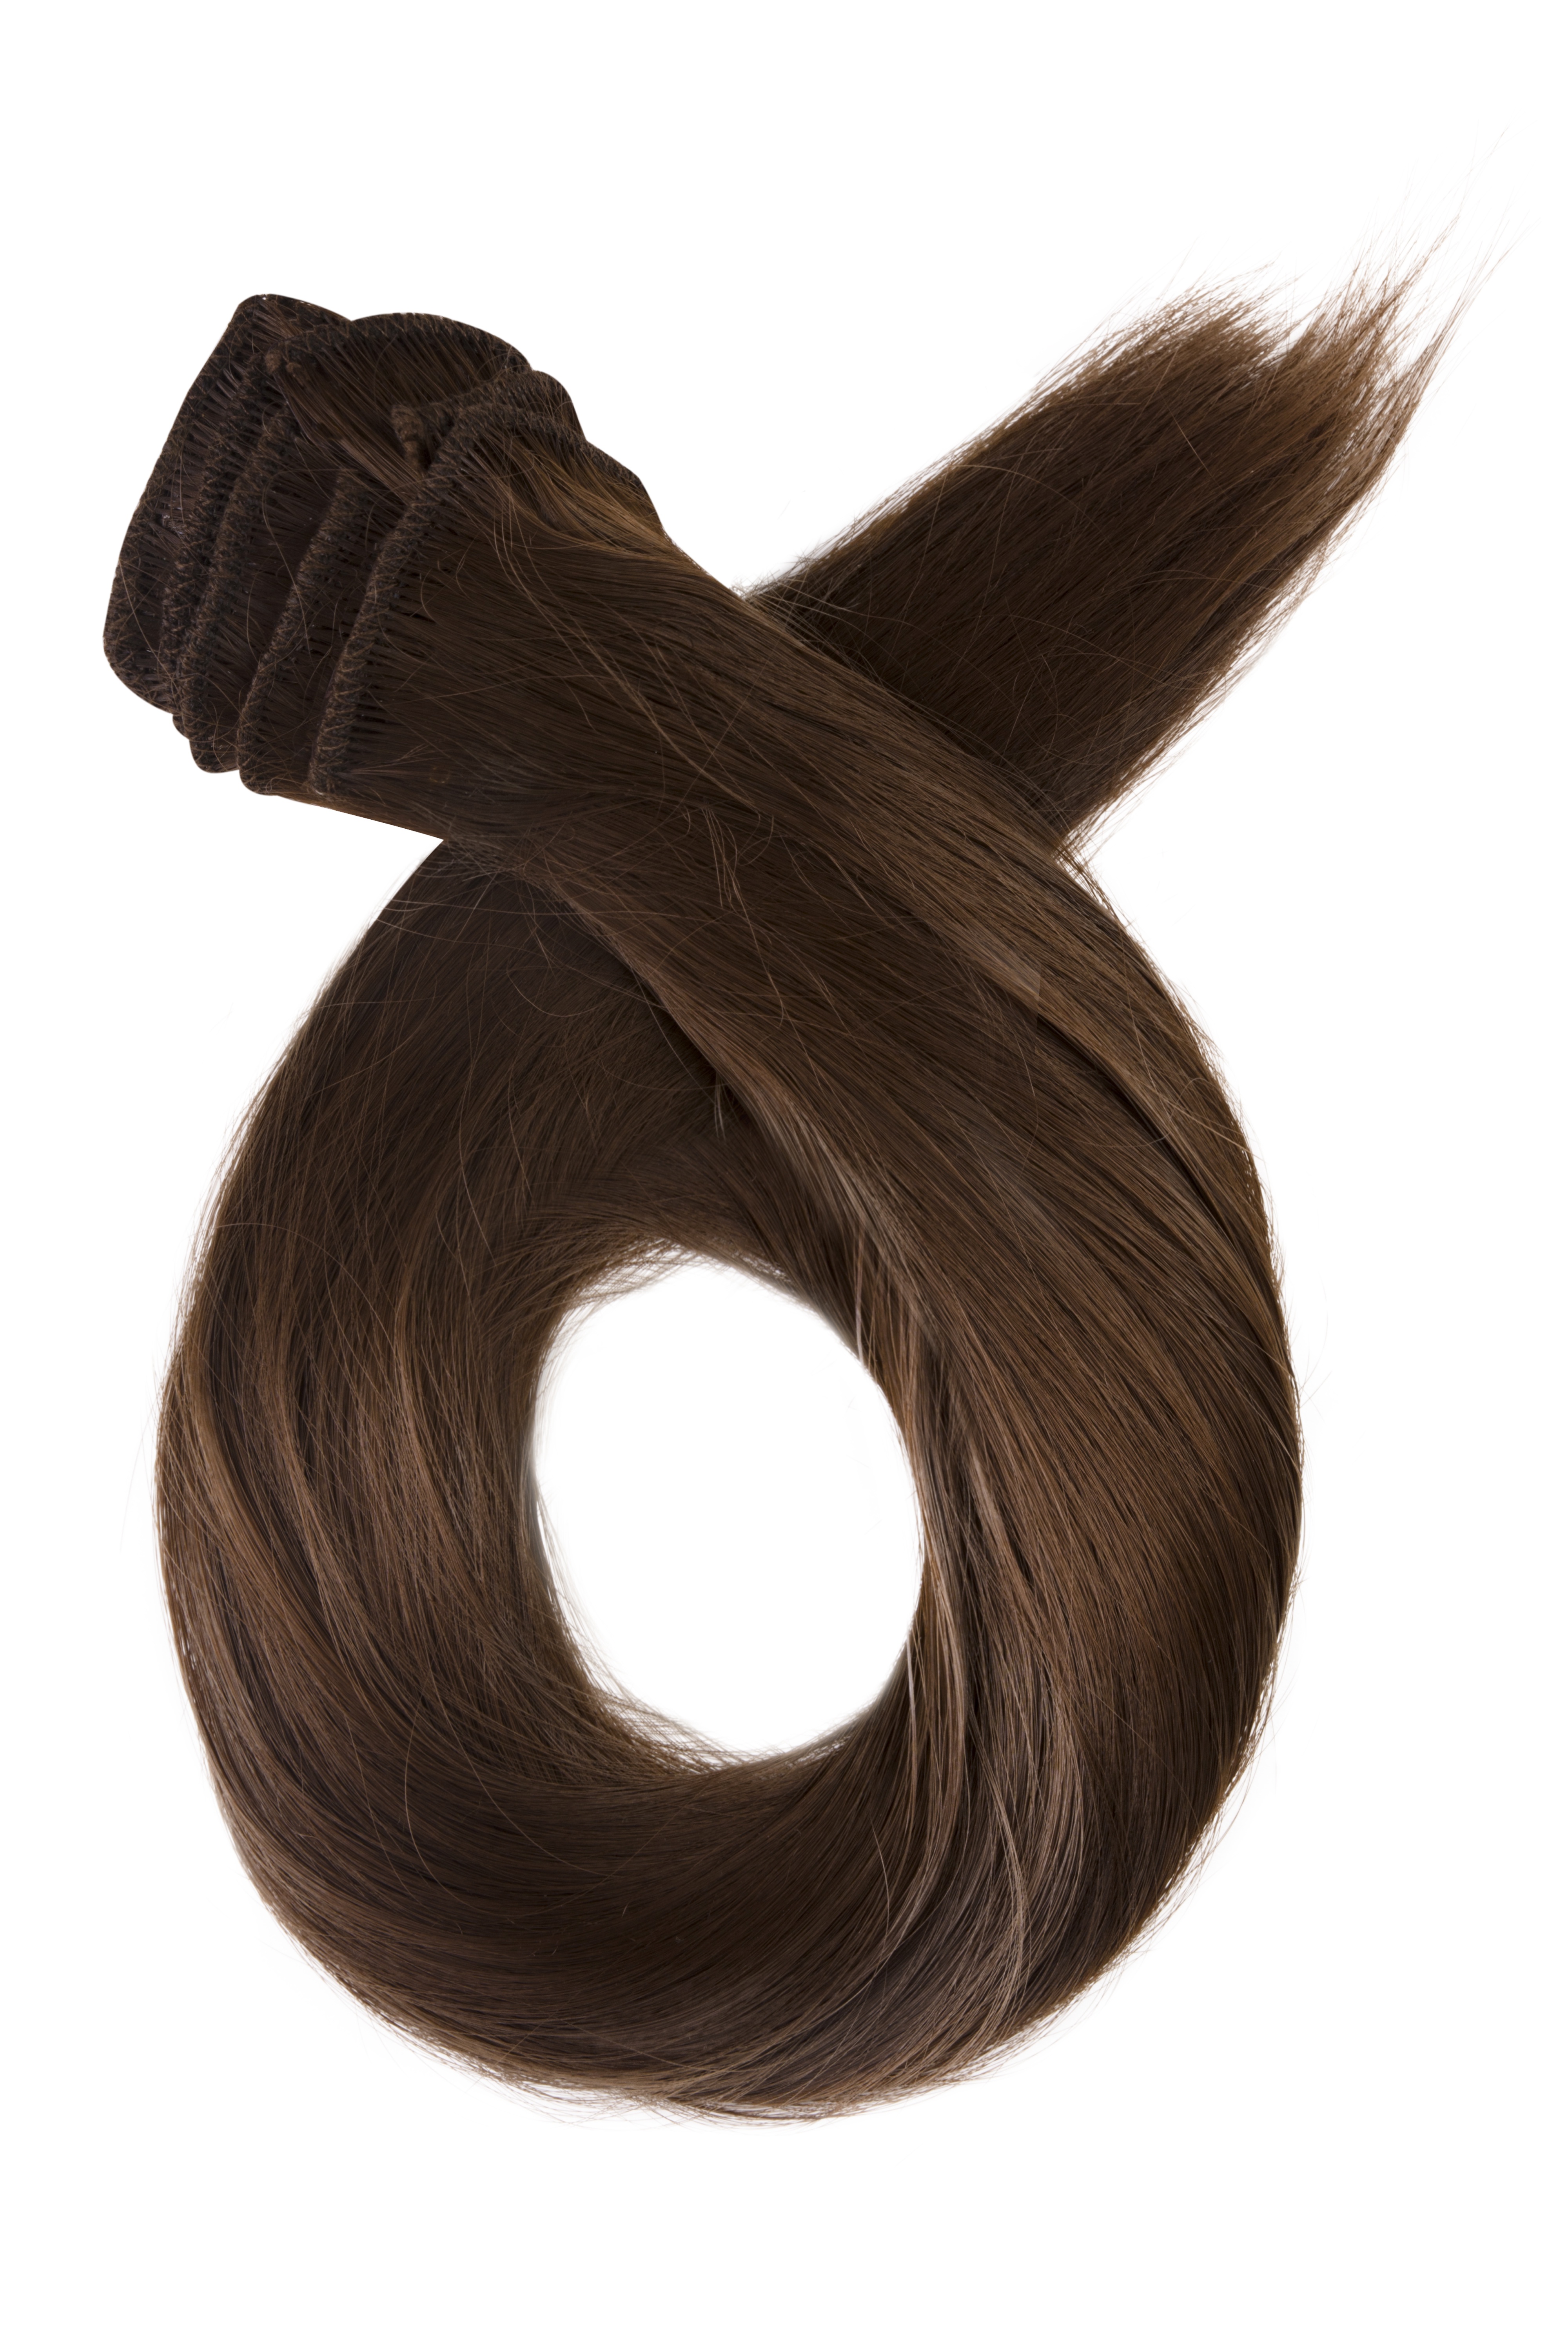 Prírodne hnedé clip in vlasy, 70cm, 180g, farba 8